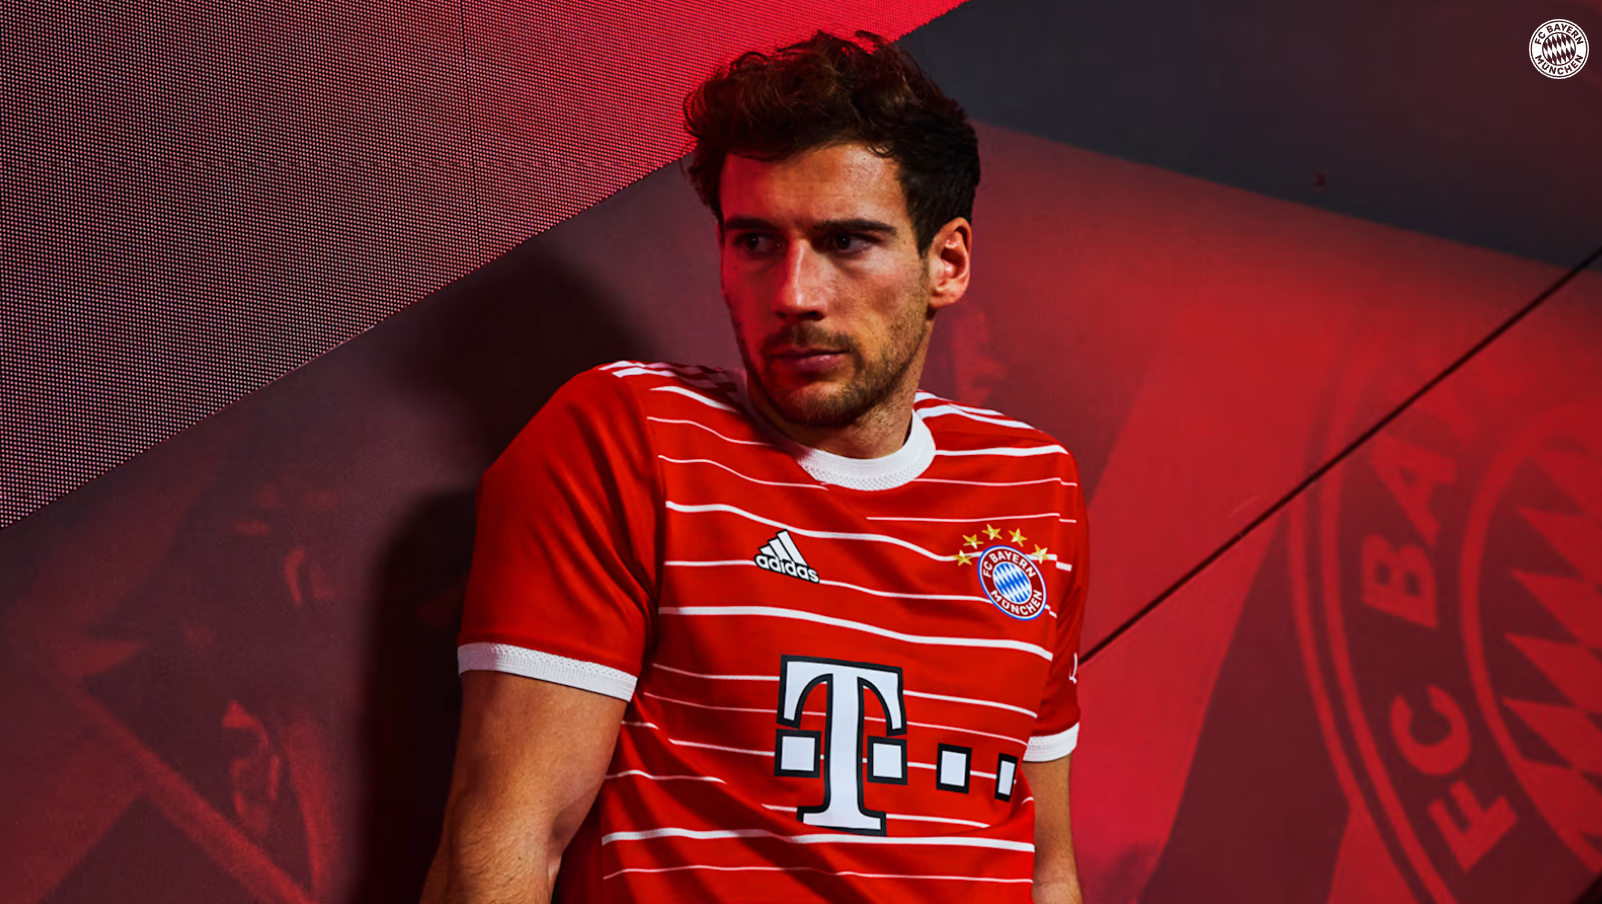 El FC Bayern vuelve a sorprender con el diseño de su camiseta para la temporada 22/23. Foto: Web oficial FC Bayern